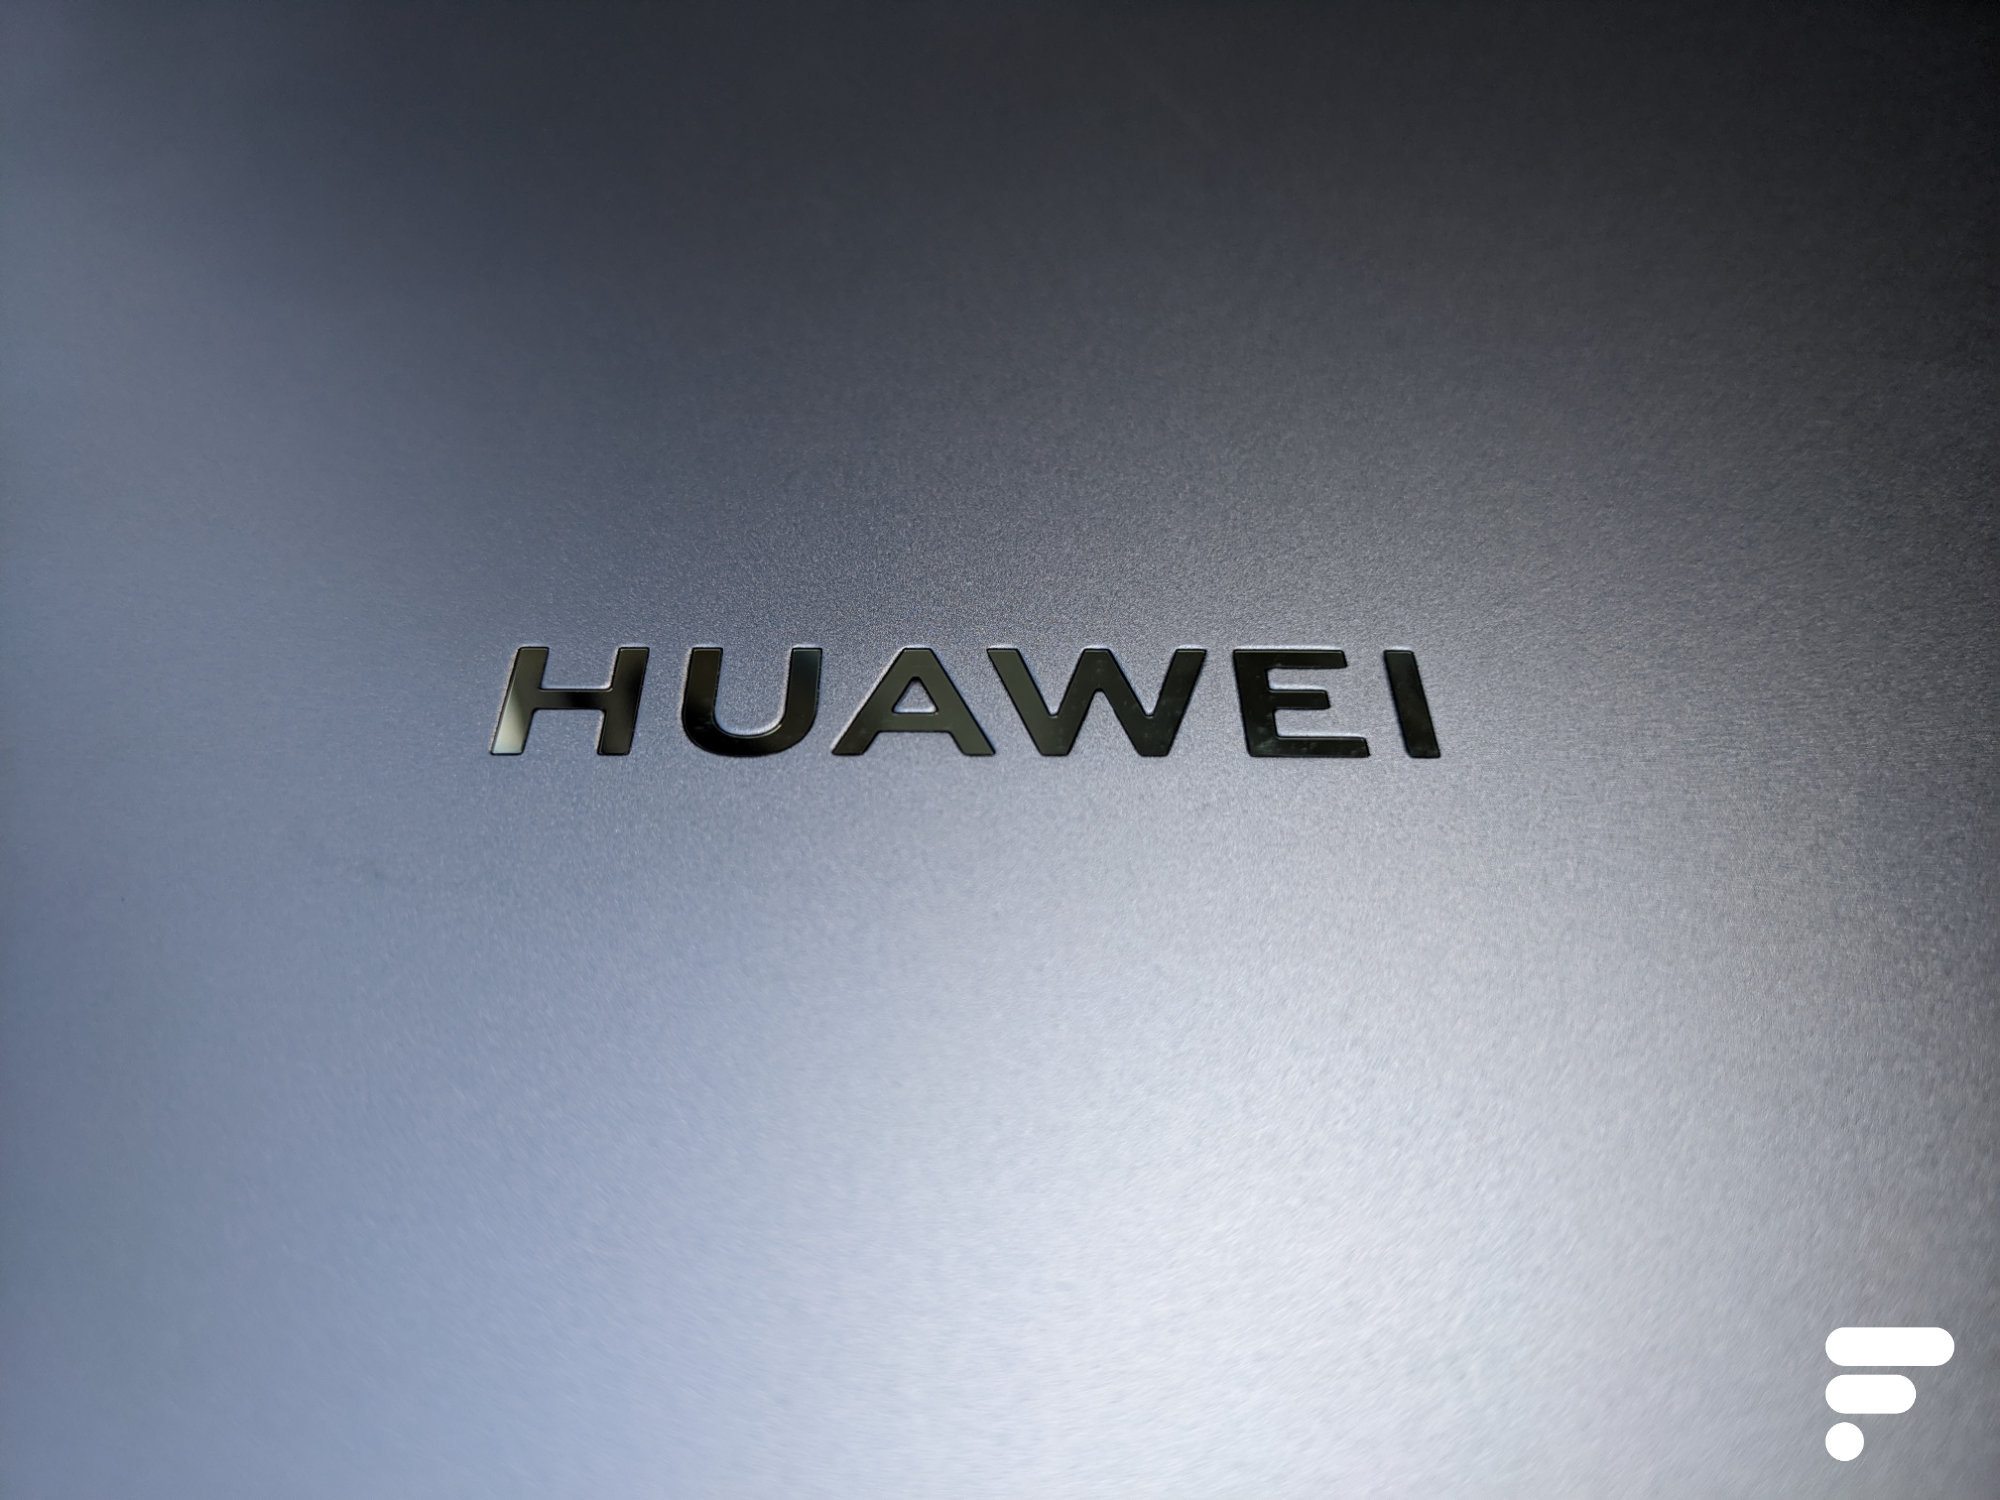 La derniÃ¨re offensive de Trump contre Huawei : bloquer Intel et les PC - Frandroid